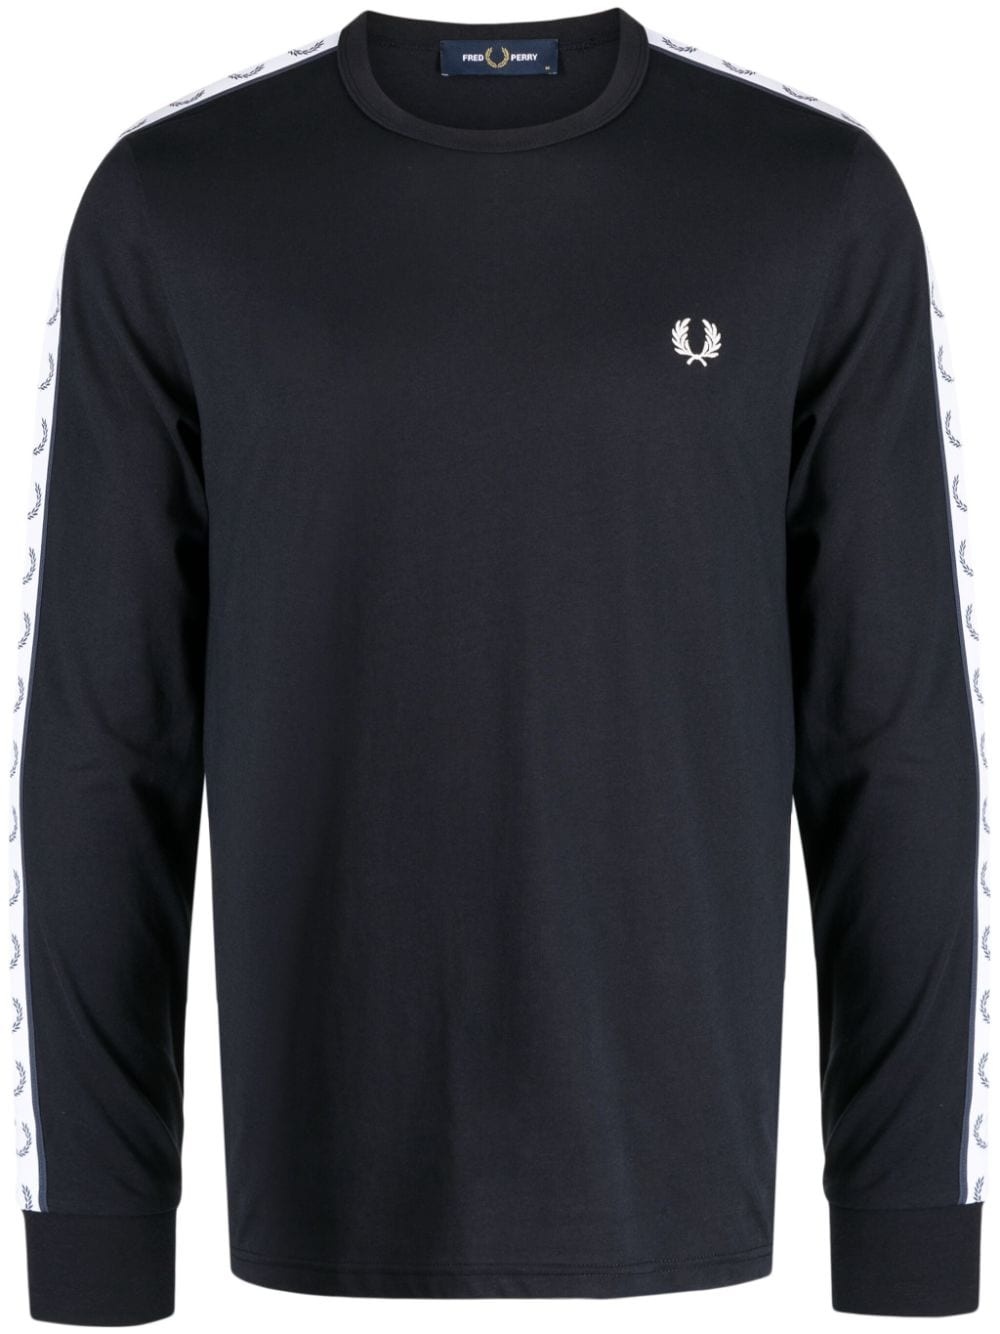 embroidered-logo long-sleeve sweatshirt - 1